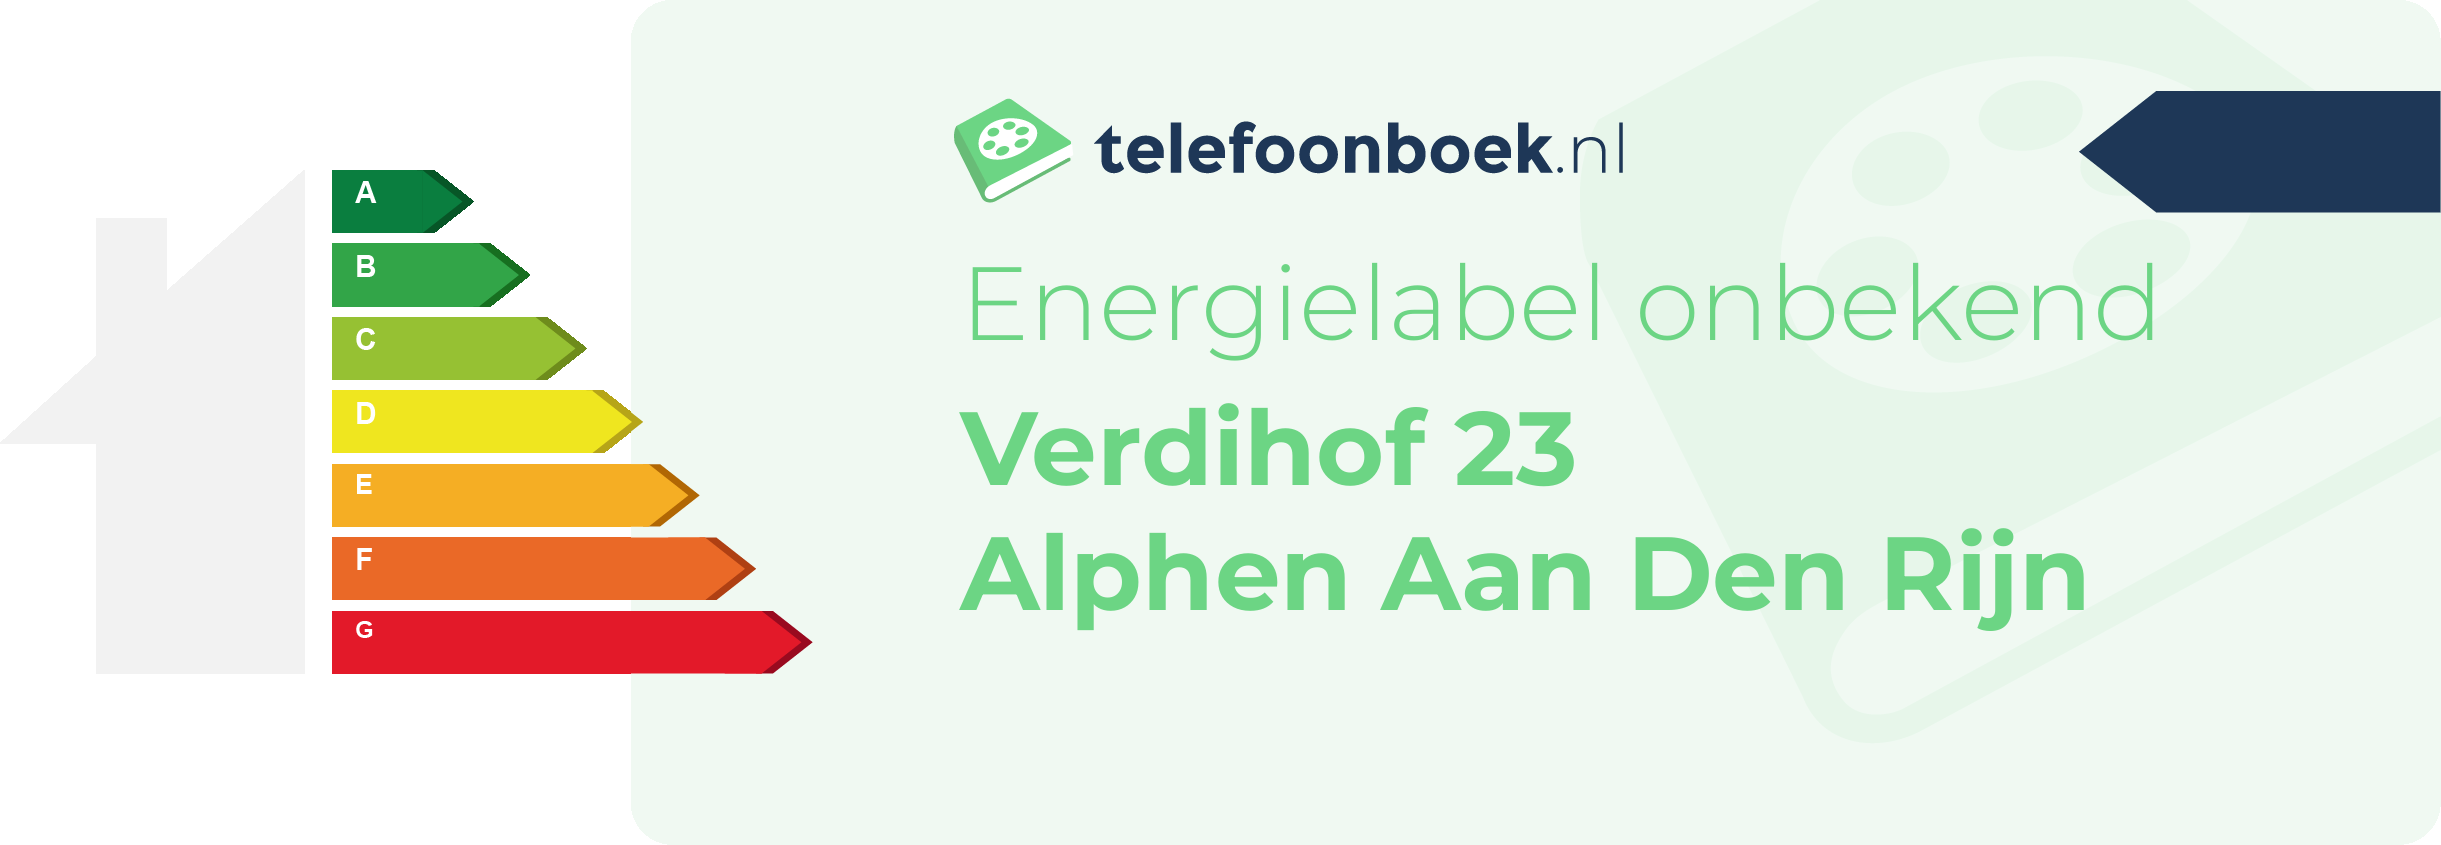 Energielabel Verdihof 23 Alphen Aan Den Rijn